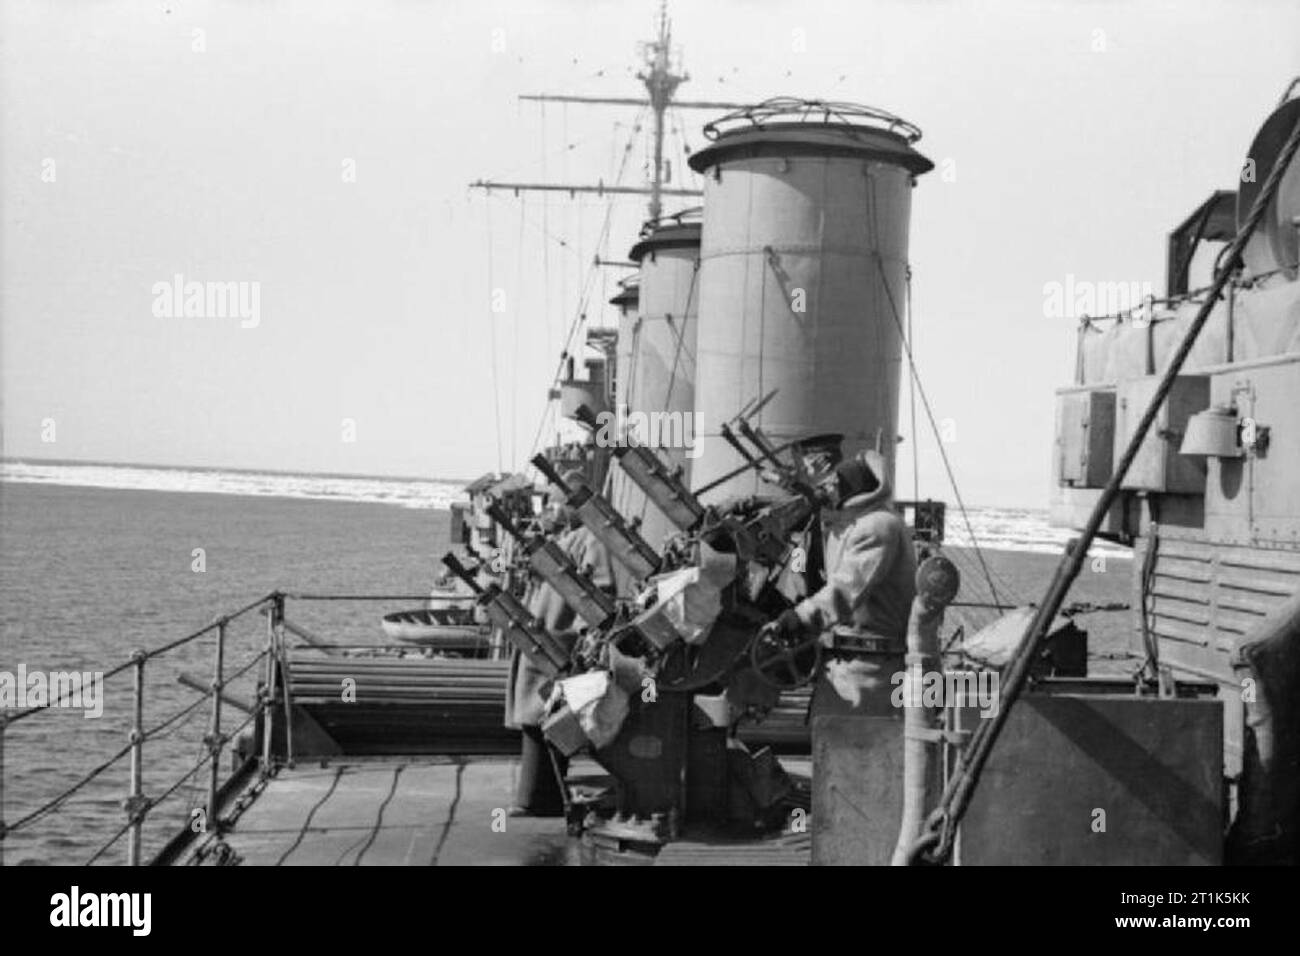 Le HMS Suffolk en patrouille dans le détroit de Danemark, 1941 à bord du HMS SUFFOLK sur une patrouille du Danemark Straights, entre l'Islande et le Groenland, 1941. L'écoulement des glaces peut être vu dans l'arrière-plan. Deux membres de l'équipage d'un homme de la quadruple 0.5' Vickers les mitrailleuses située au milieu du bateau, tandis qu'un troisième agit comme Lookout. Banque D'Images